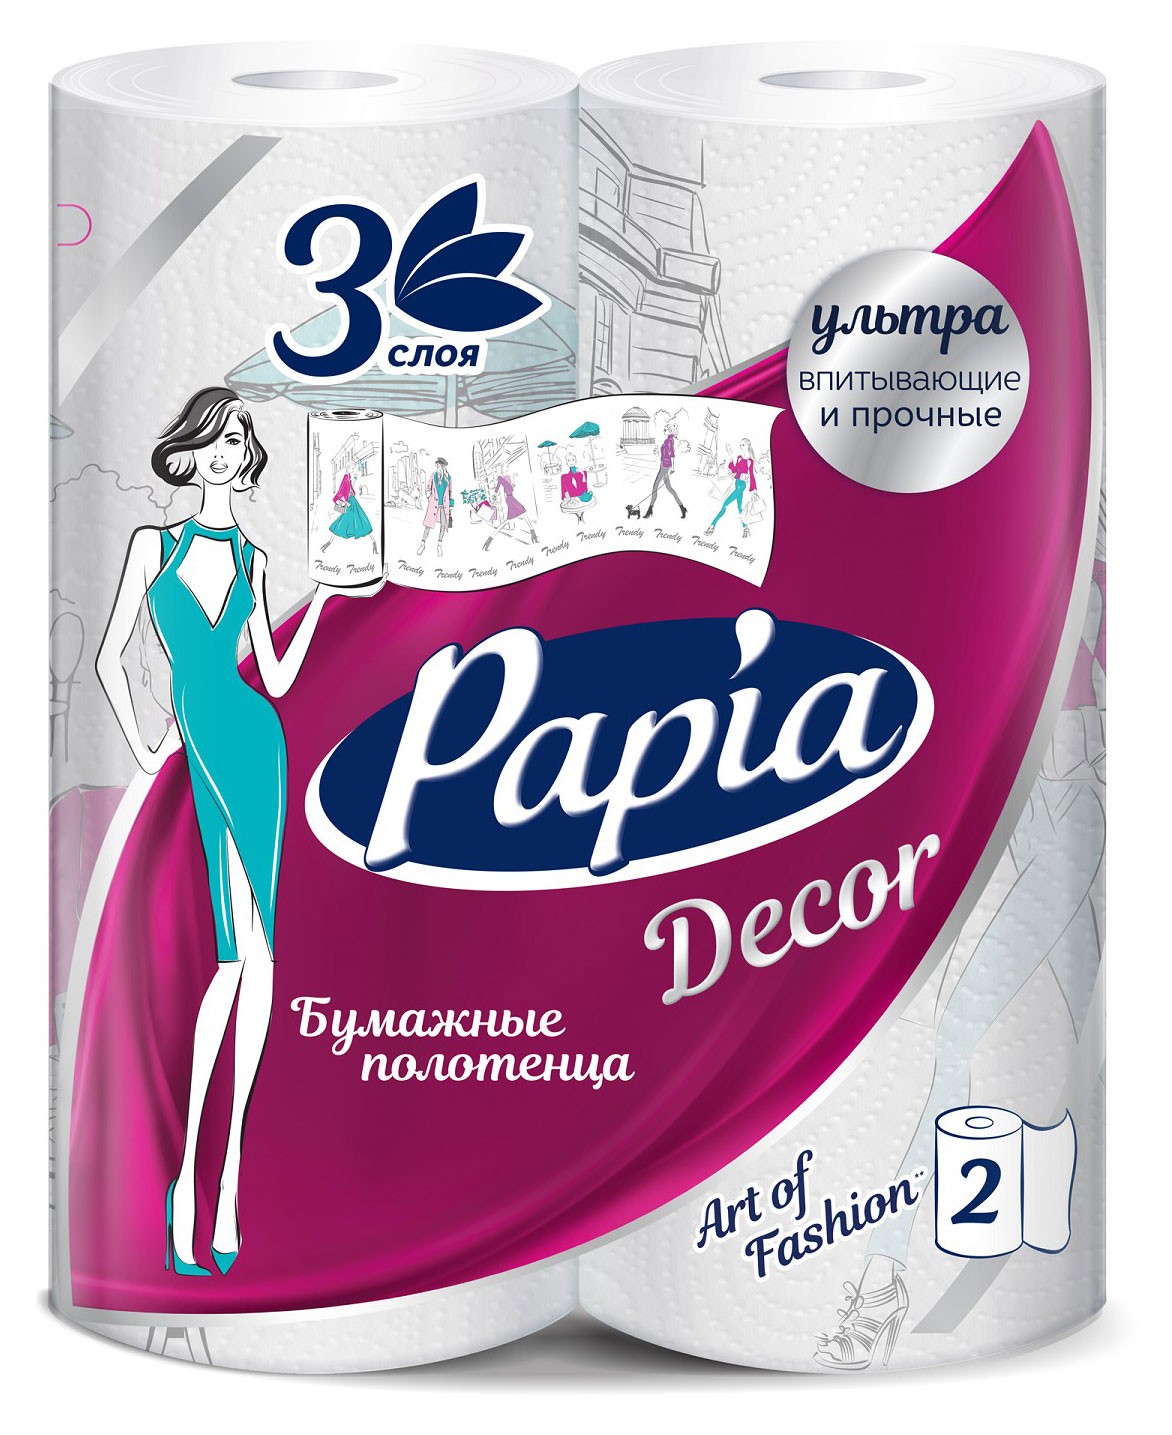 Бумажные полотенца Papia Декор 3 слоя, 2 рулона